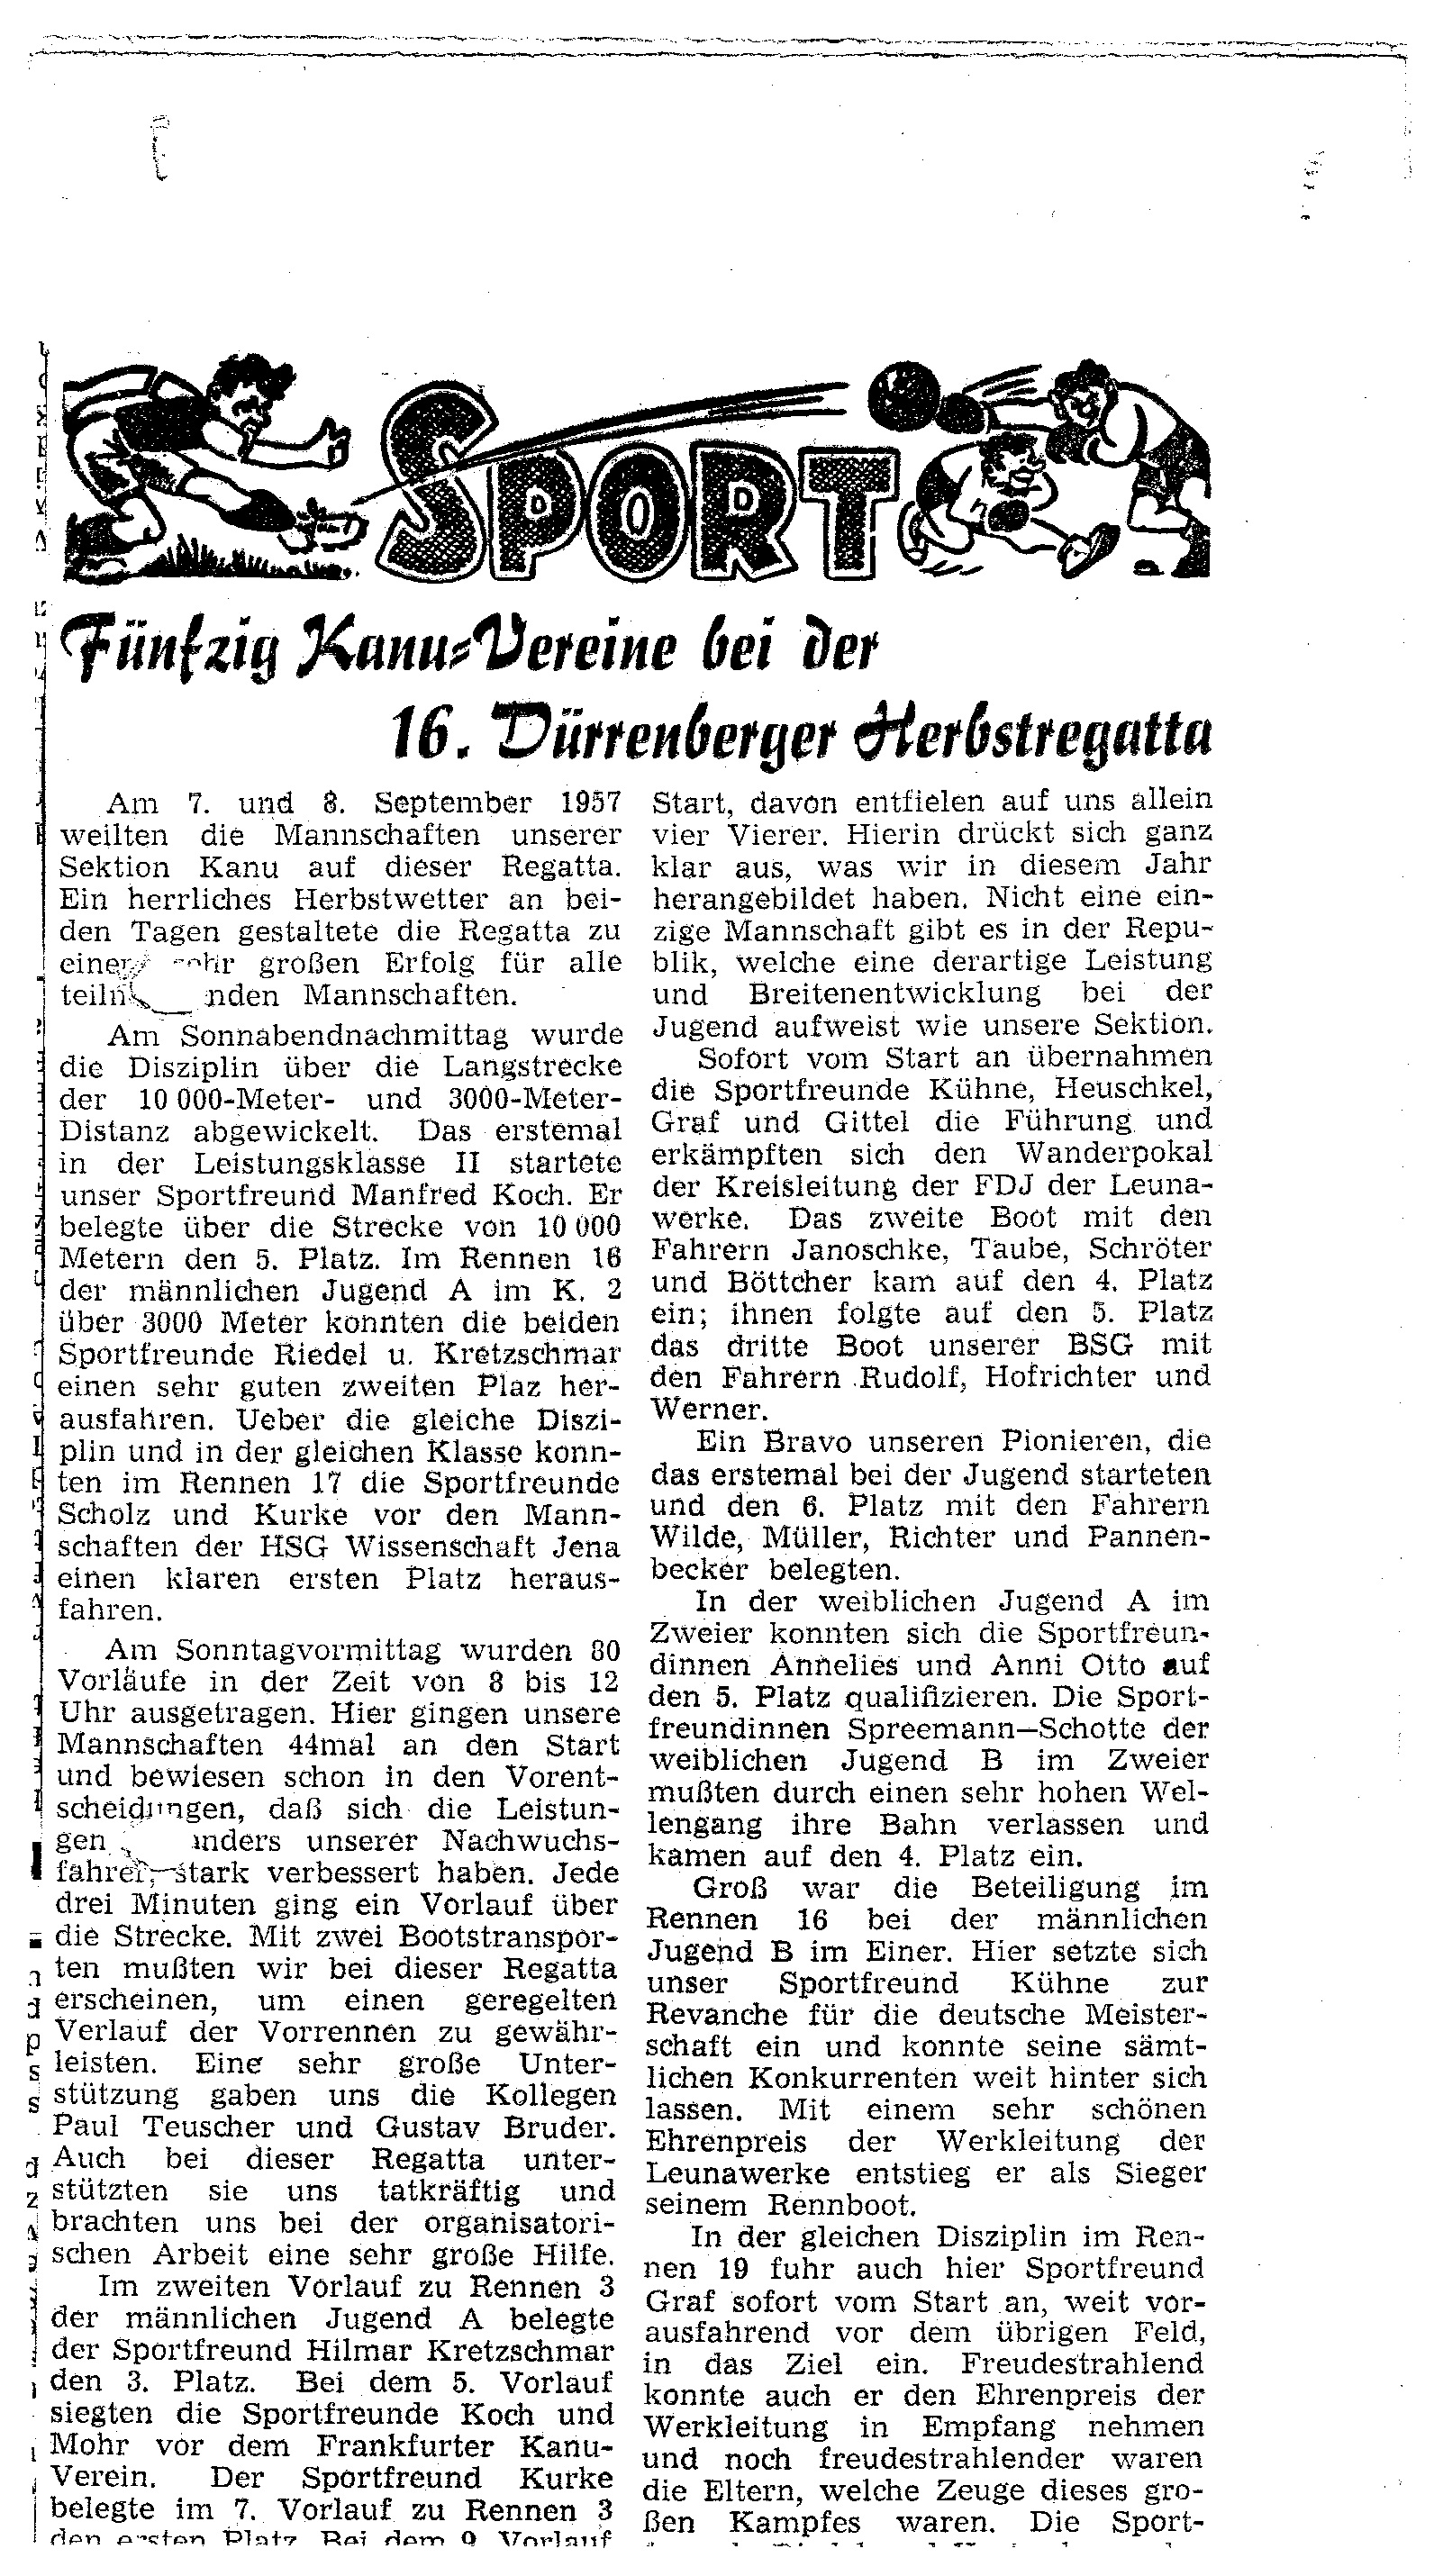 1957-09-08 Sport 50 Vereine bei der 16. Dürrenberger Herbstregatta